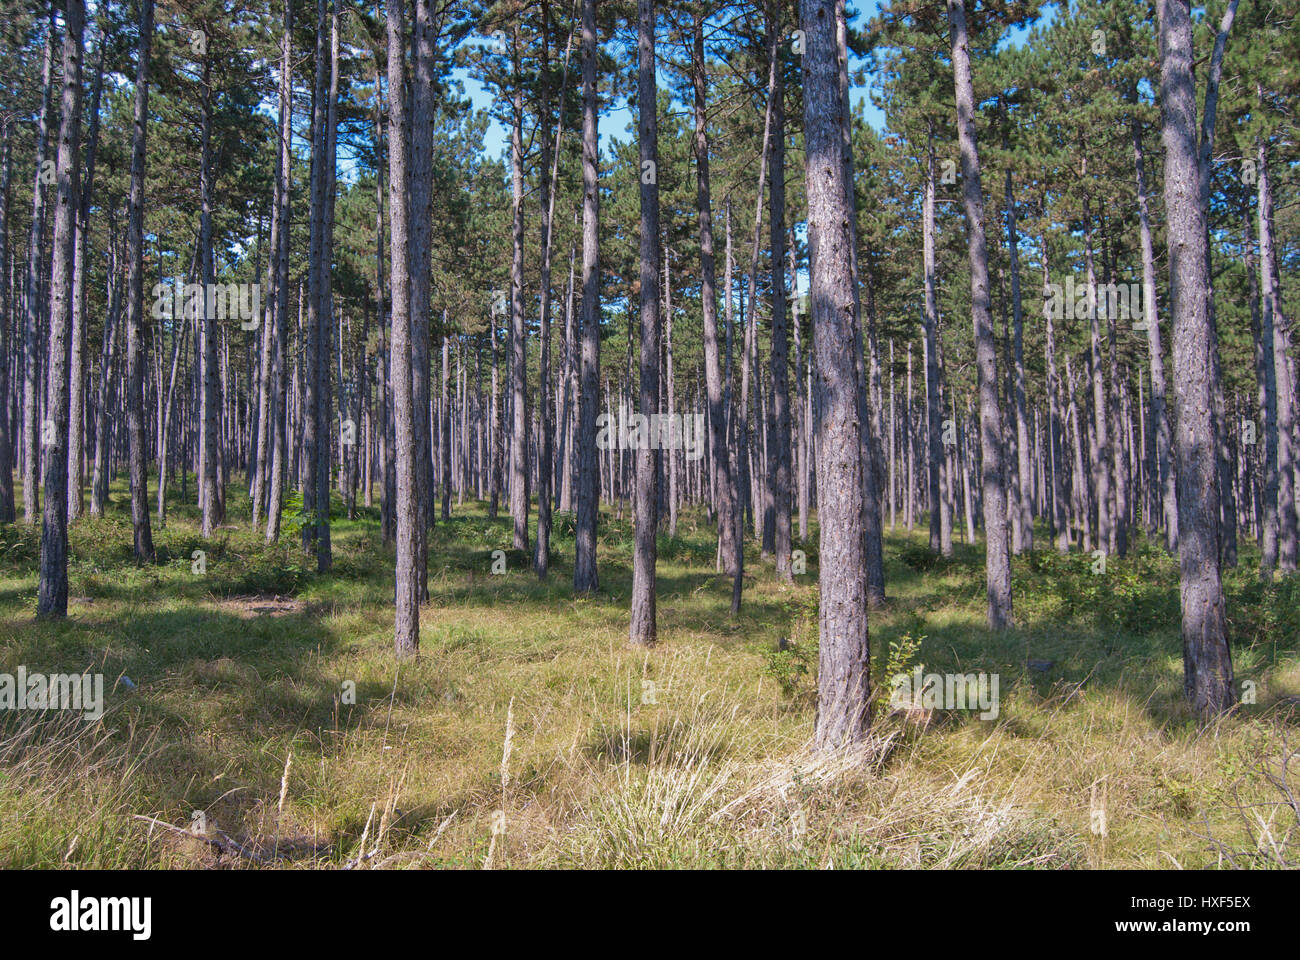 Pino austriaco (Pinus nigra) foresta monocoltura, fornitura di legname e di altri prodotti forestali come resina. Foto Stock